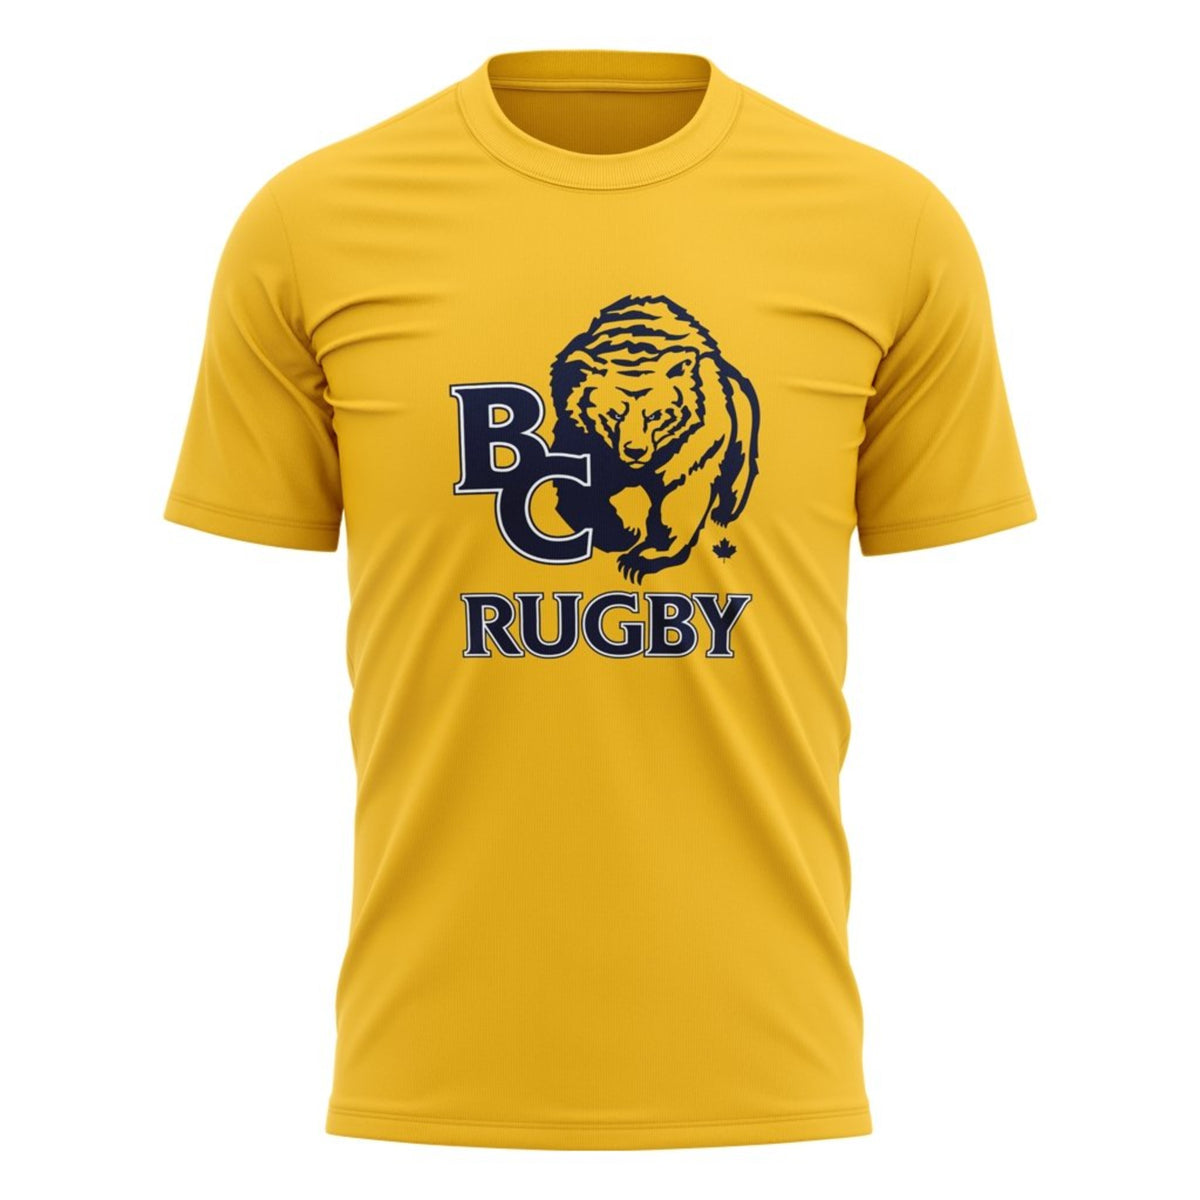 BC Rugby 2021 &quot;Team&quot; Tee - Men&#39;s Navy/Grey/White/Gold - www.therugbyshop.com www.therugbyshop.com MEN&#39;S / GOLD / S XIX Brands TEES BC Rugby 2021 &quot;Team&quot; Tee - Men&#39;s Navy/Grey/White/Gold